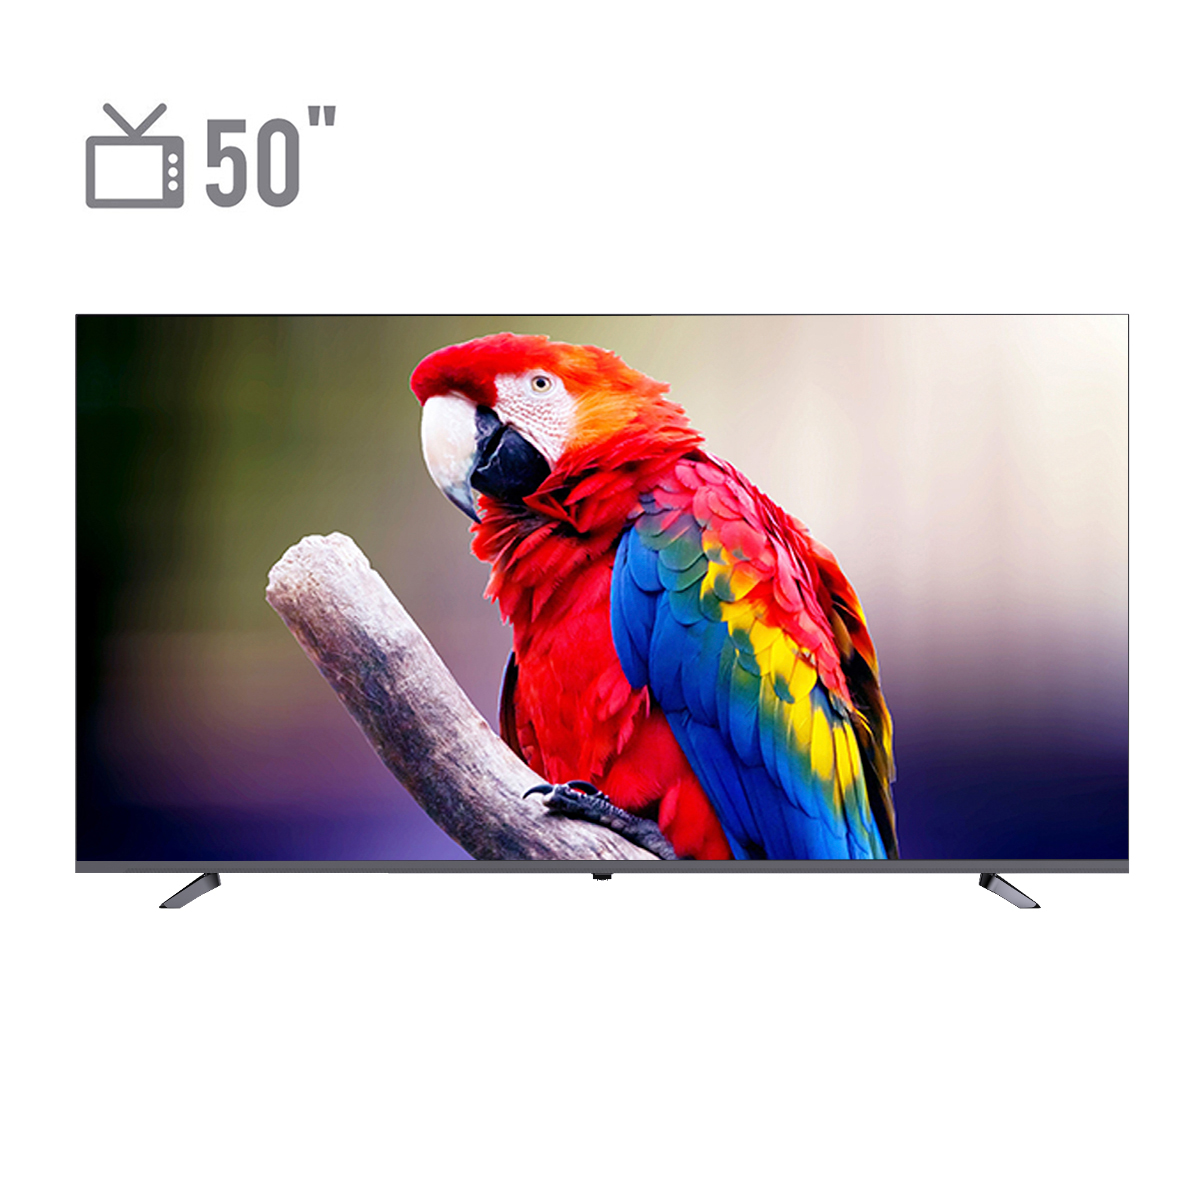 نکته خرید - قیمت روز تلویزیون ال ای دی هوشمند مکسن مدل 50AU9000 سایز 50 اینچ خرید